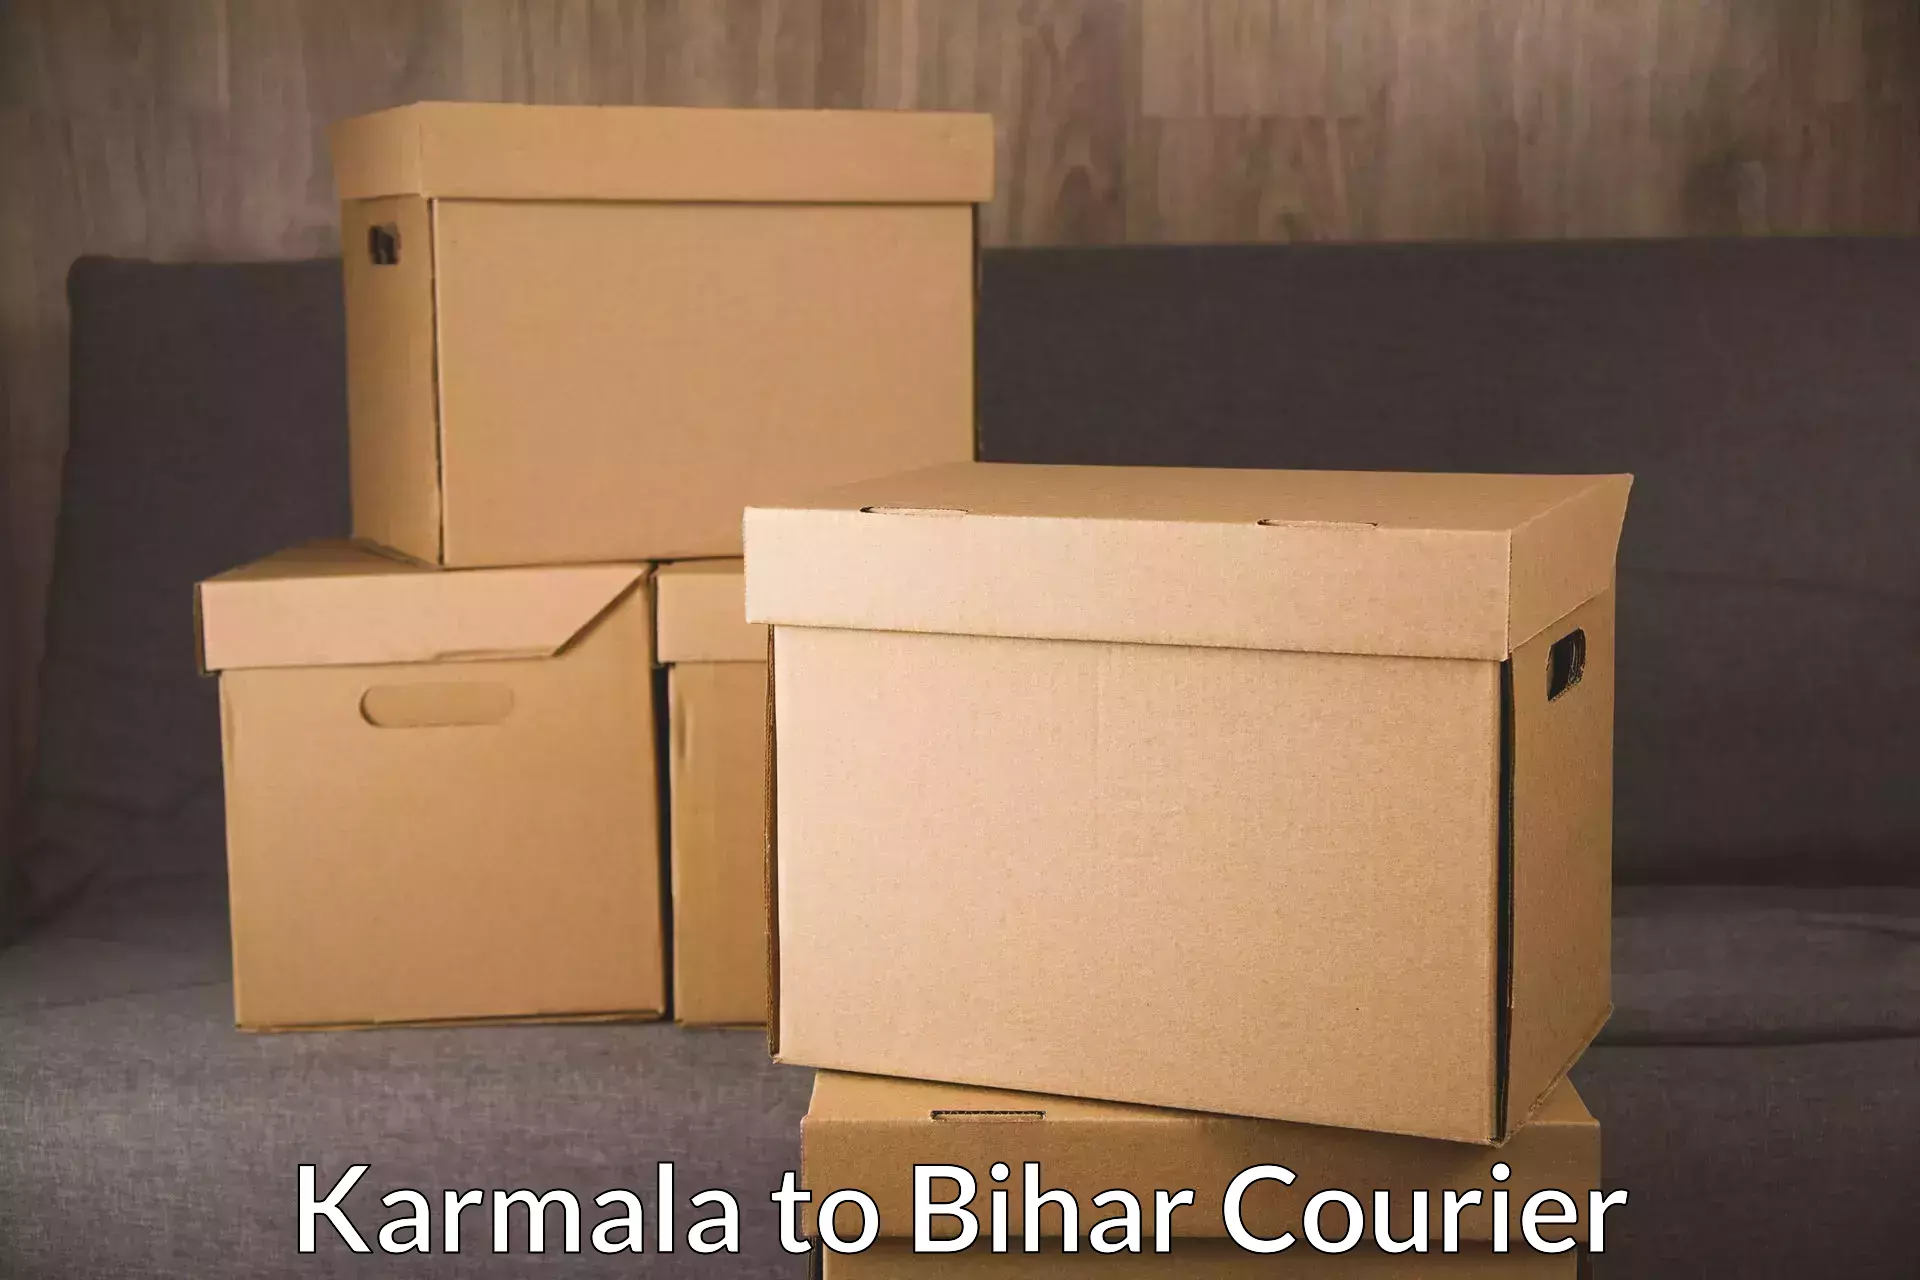 Expedited shipping methods Karmala to Barhiya